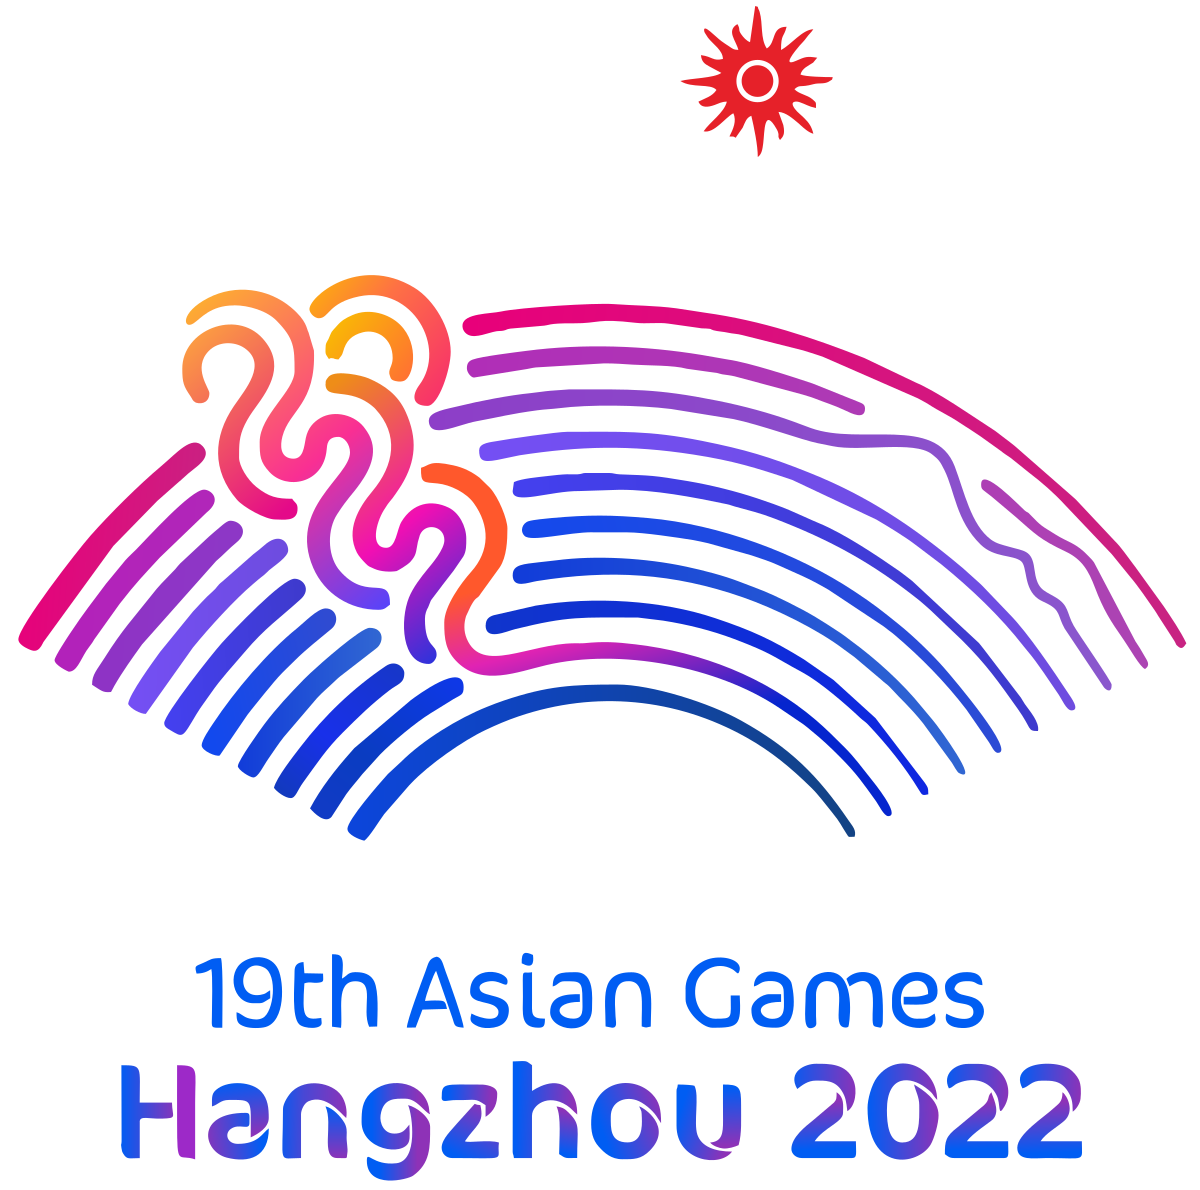 Đại hội thể thao châu Á 2022 sẽ diễn ra tại Hàng Châu, Trung Quốc